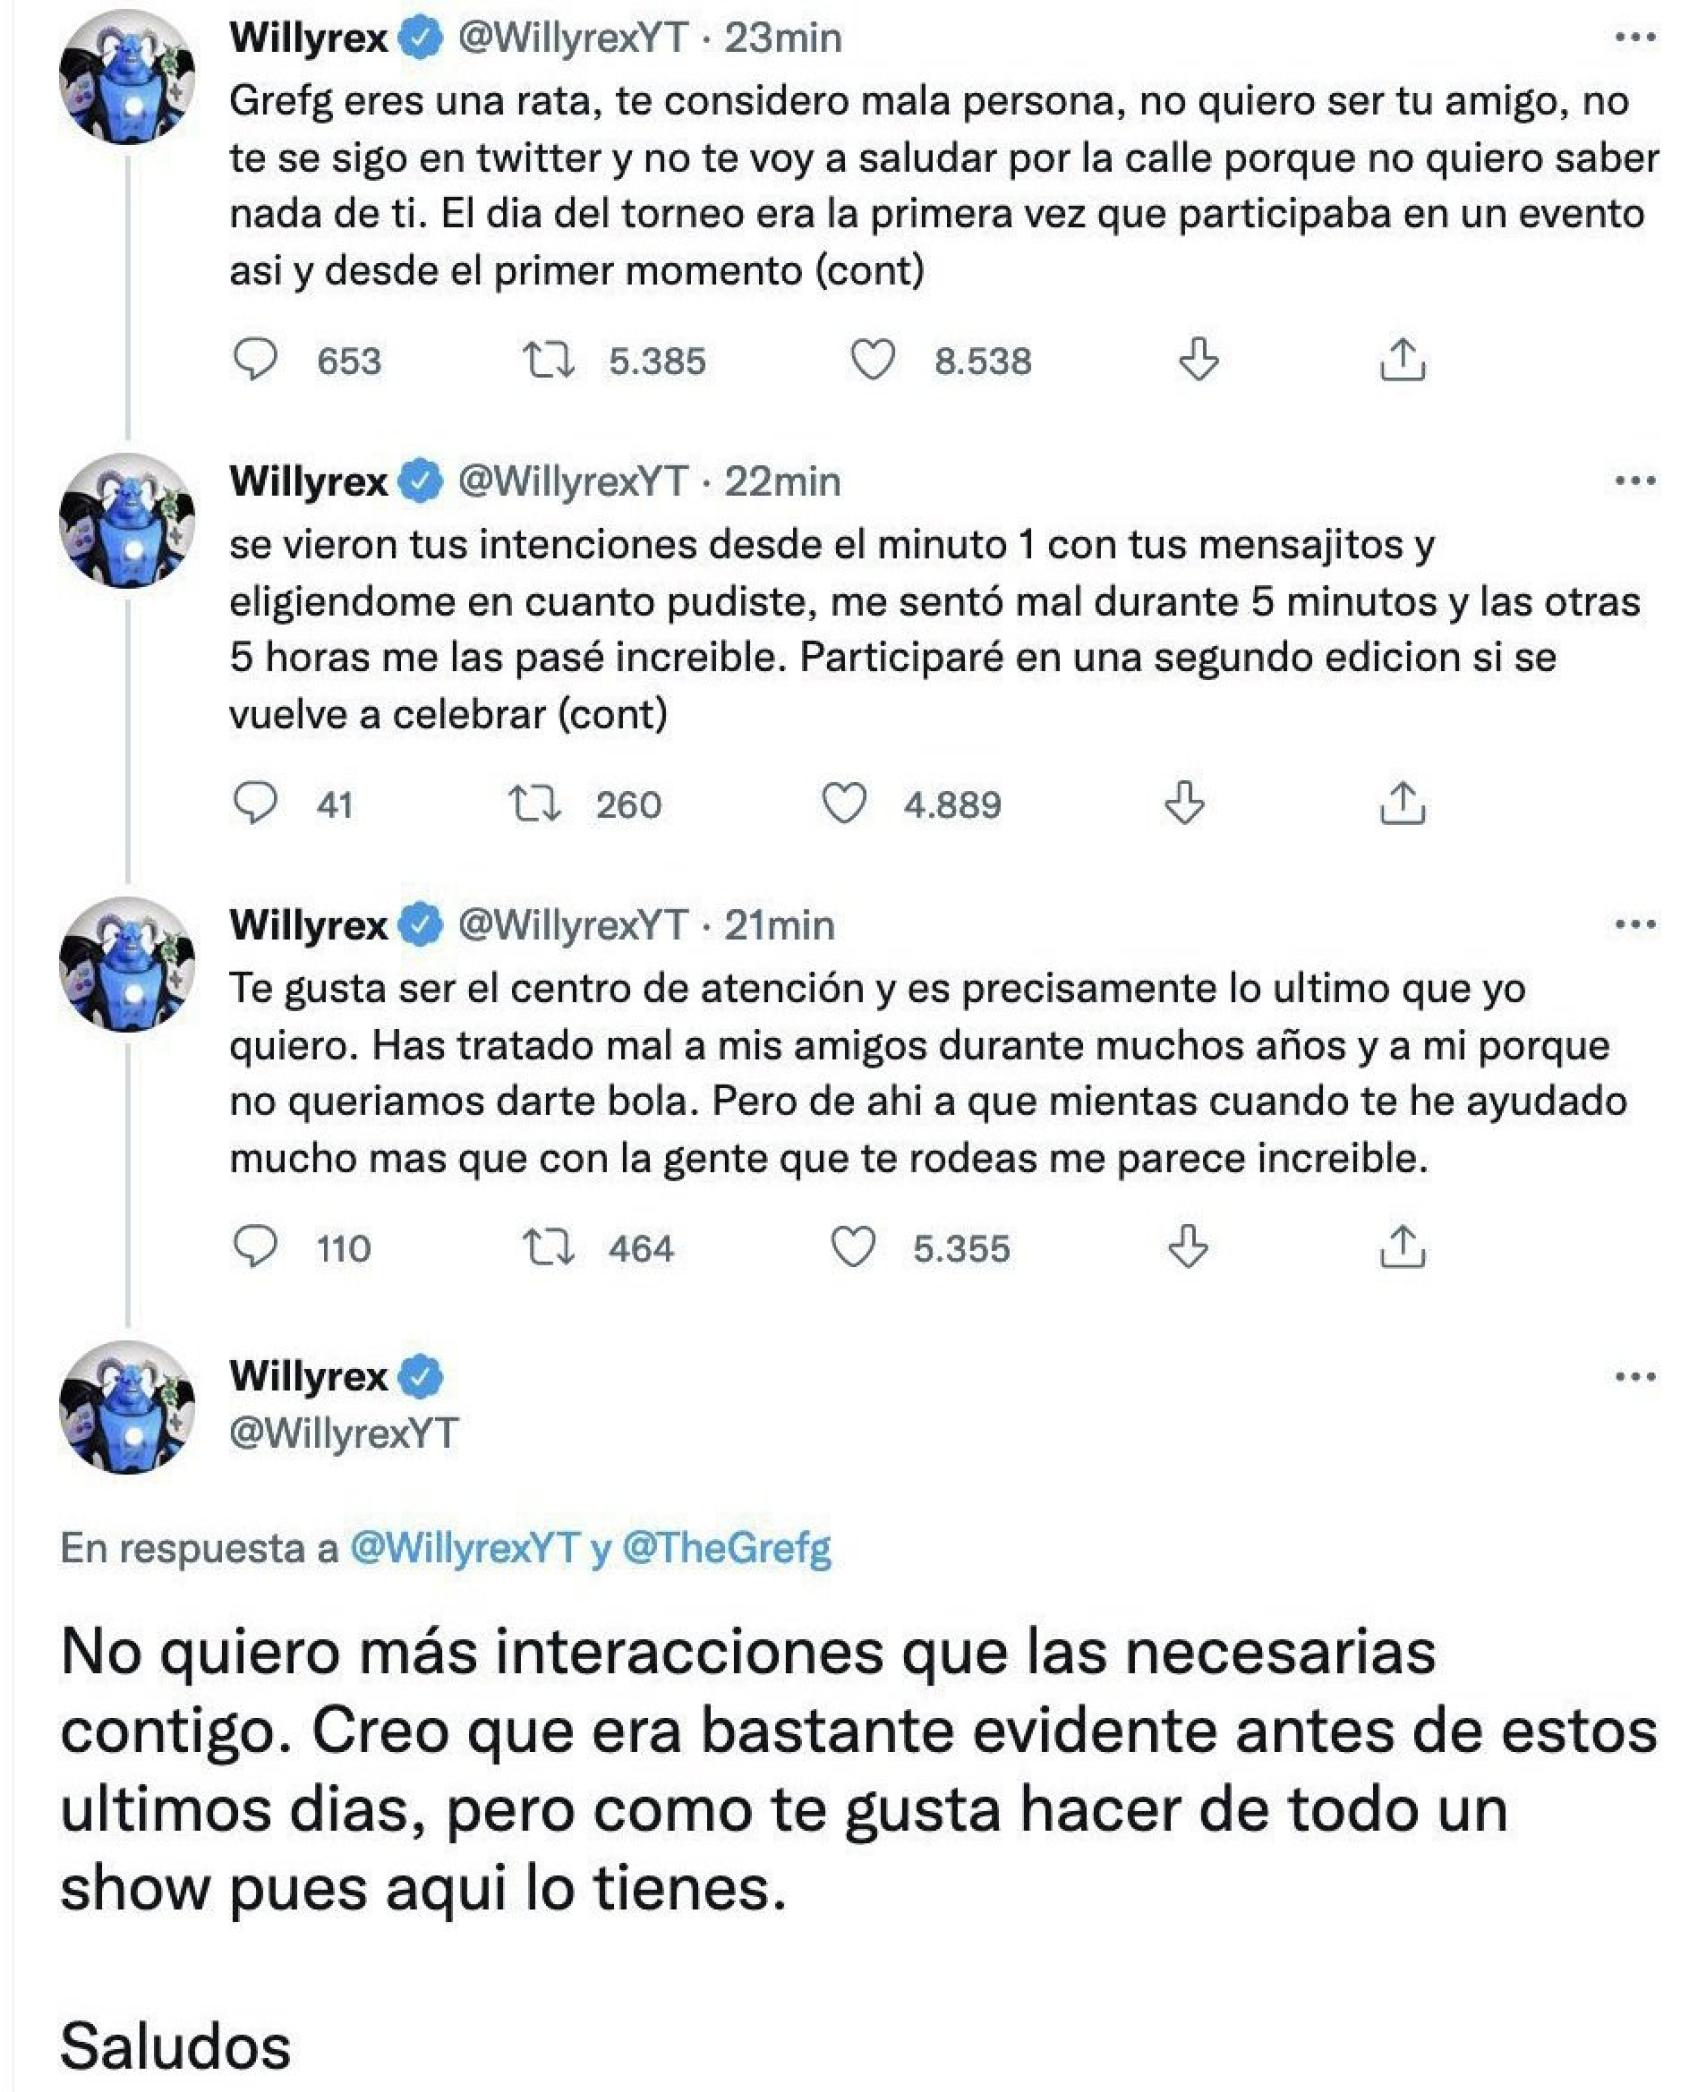 Algunos de los tweets de Willyrex en su polémica hace unos años con TheGrefg.